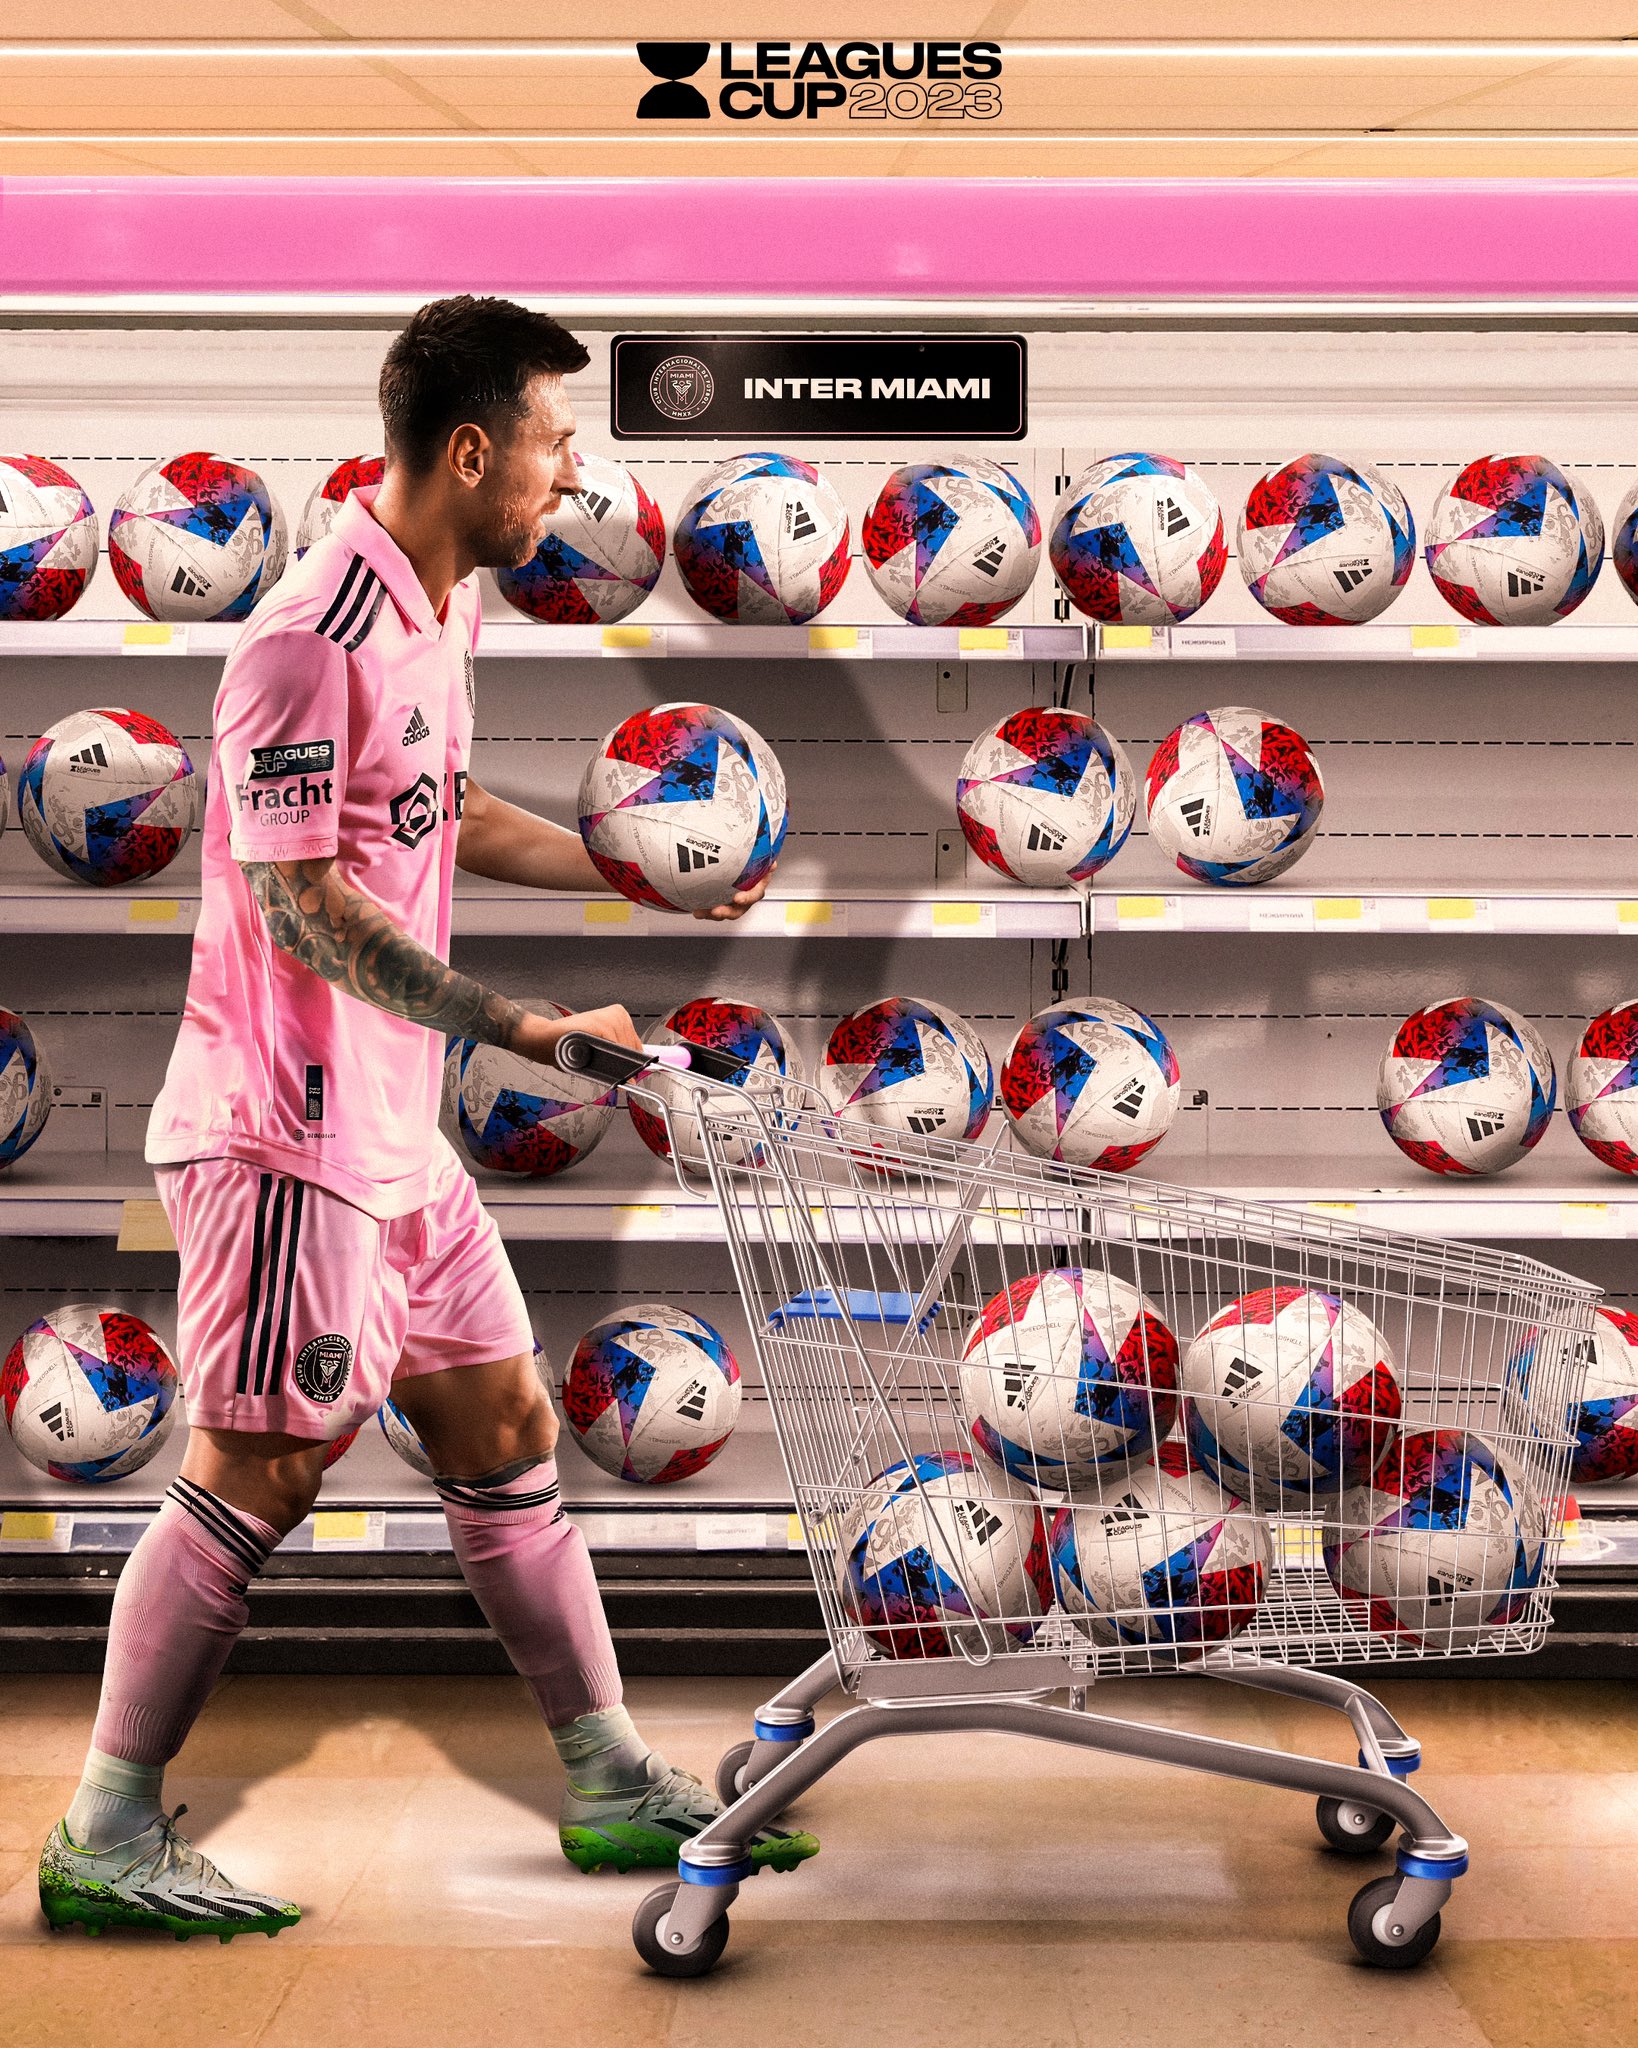 Messi de compras goleadoras en una imagen que publicó Leagues Cup en sus redes